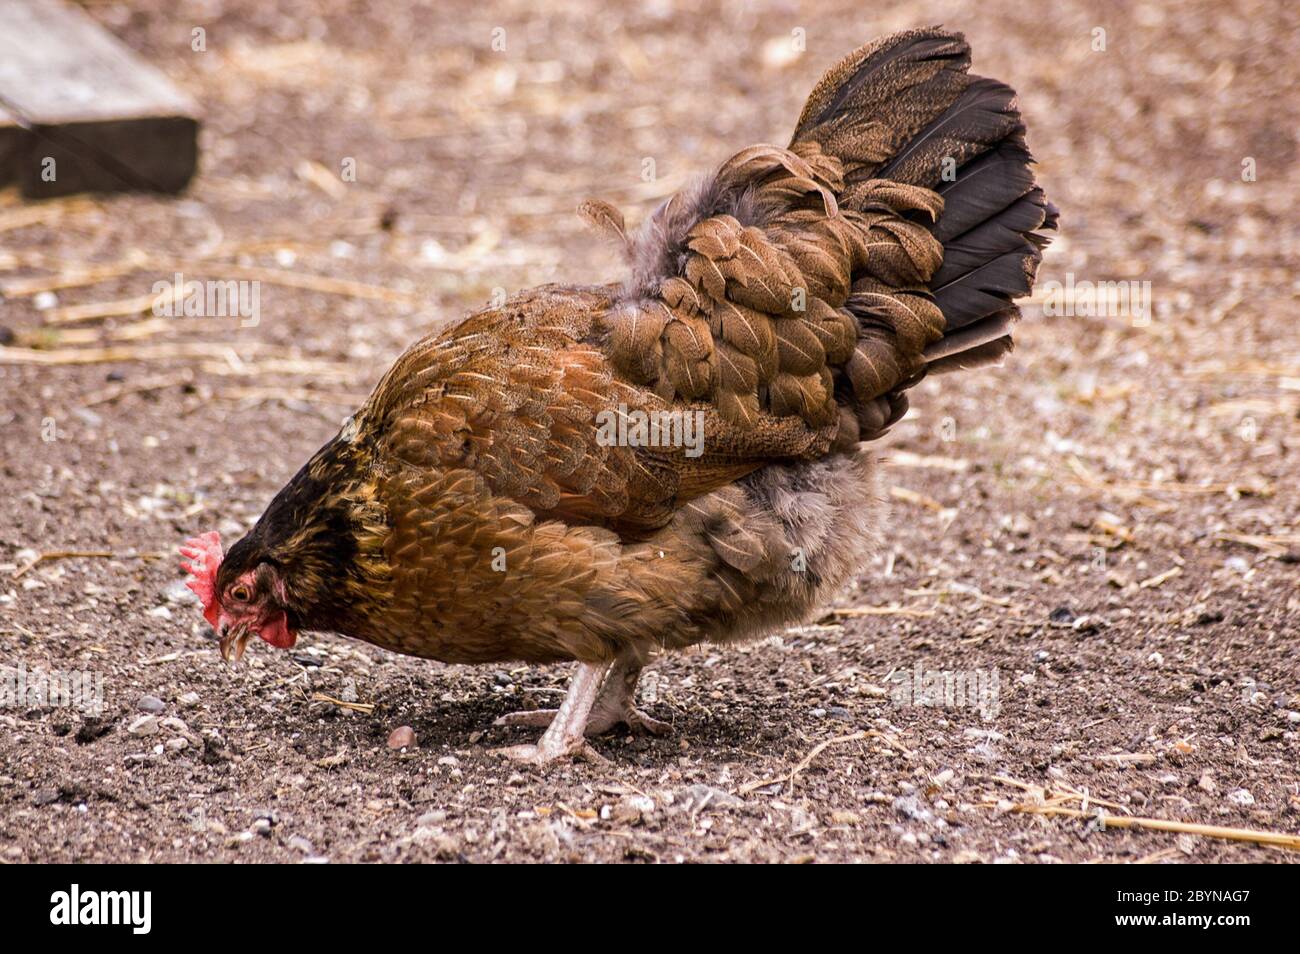 Ein braunes Henne, das in einem Hof Getreide spickt. Stockfoto